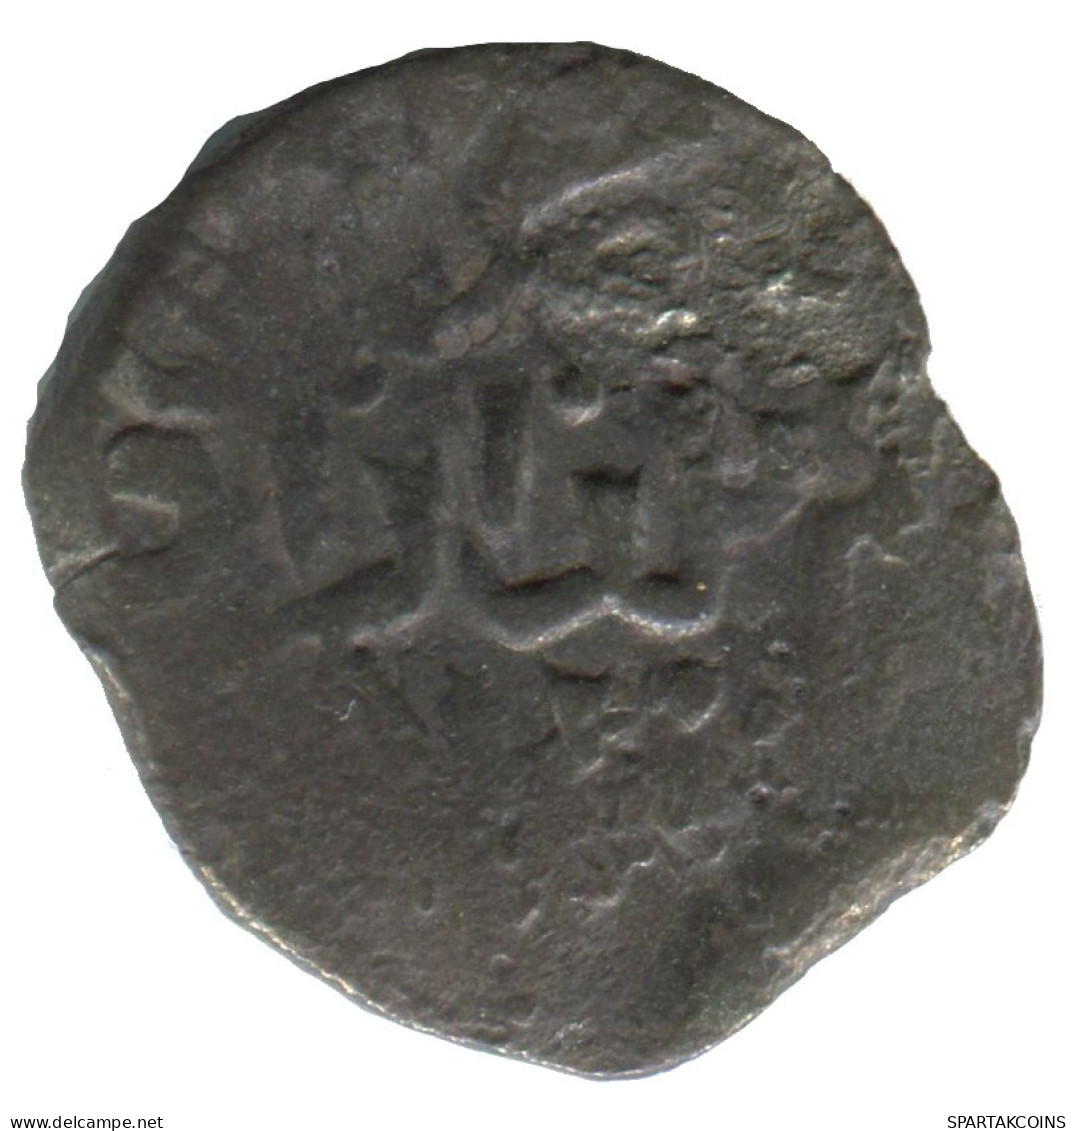 GOLDEN HORDE Silver Dirham Medieval Islamic Coin 1.2g/17mm #NNN1998.8.D.A - Islamische Münzen